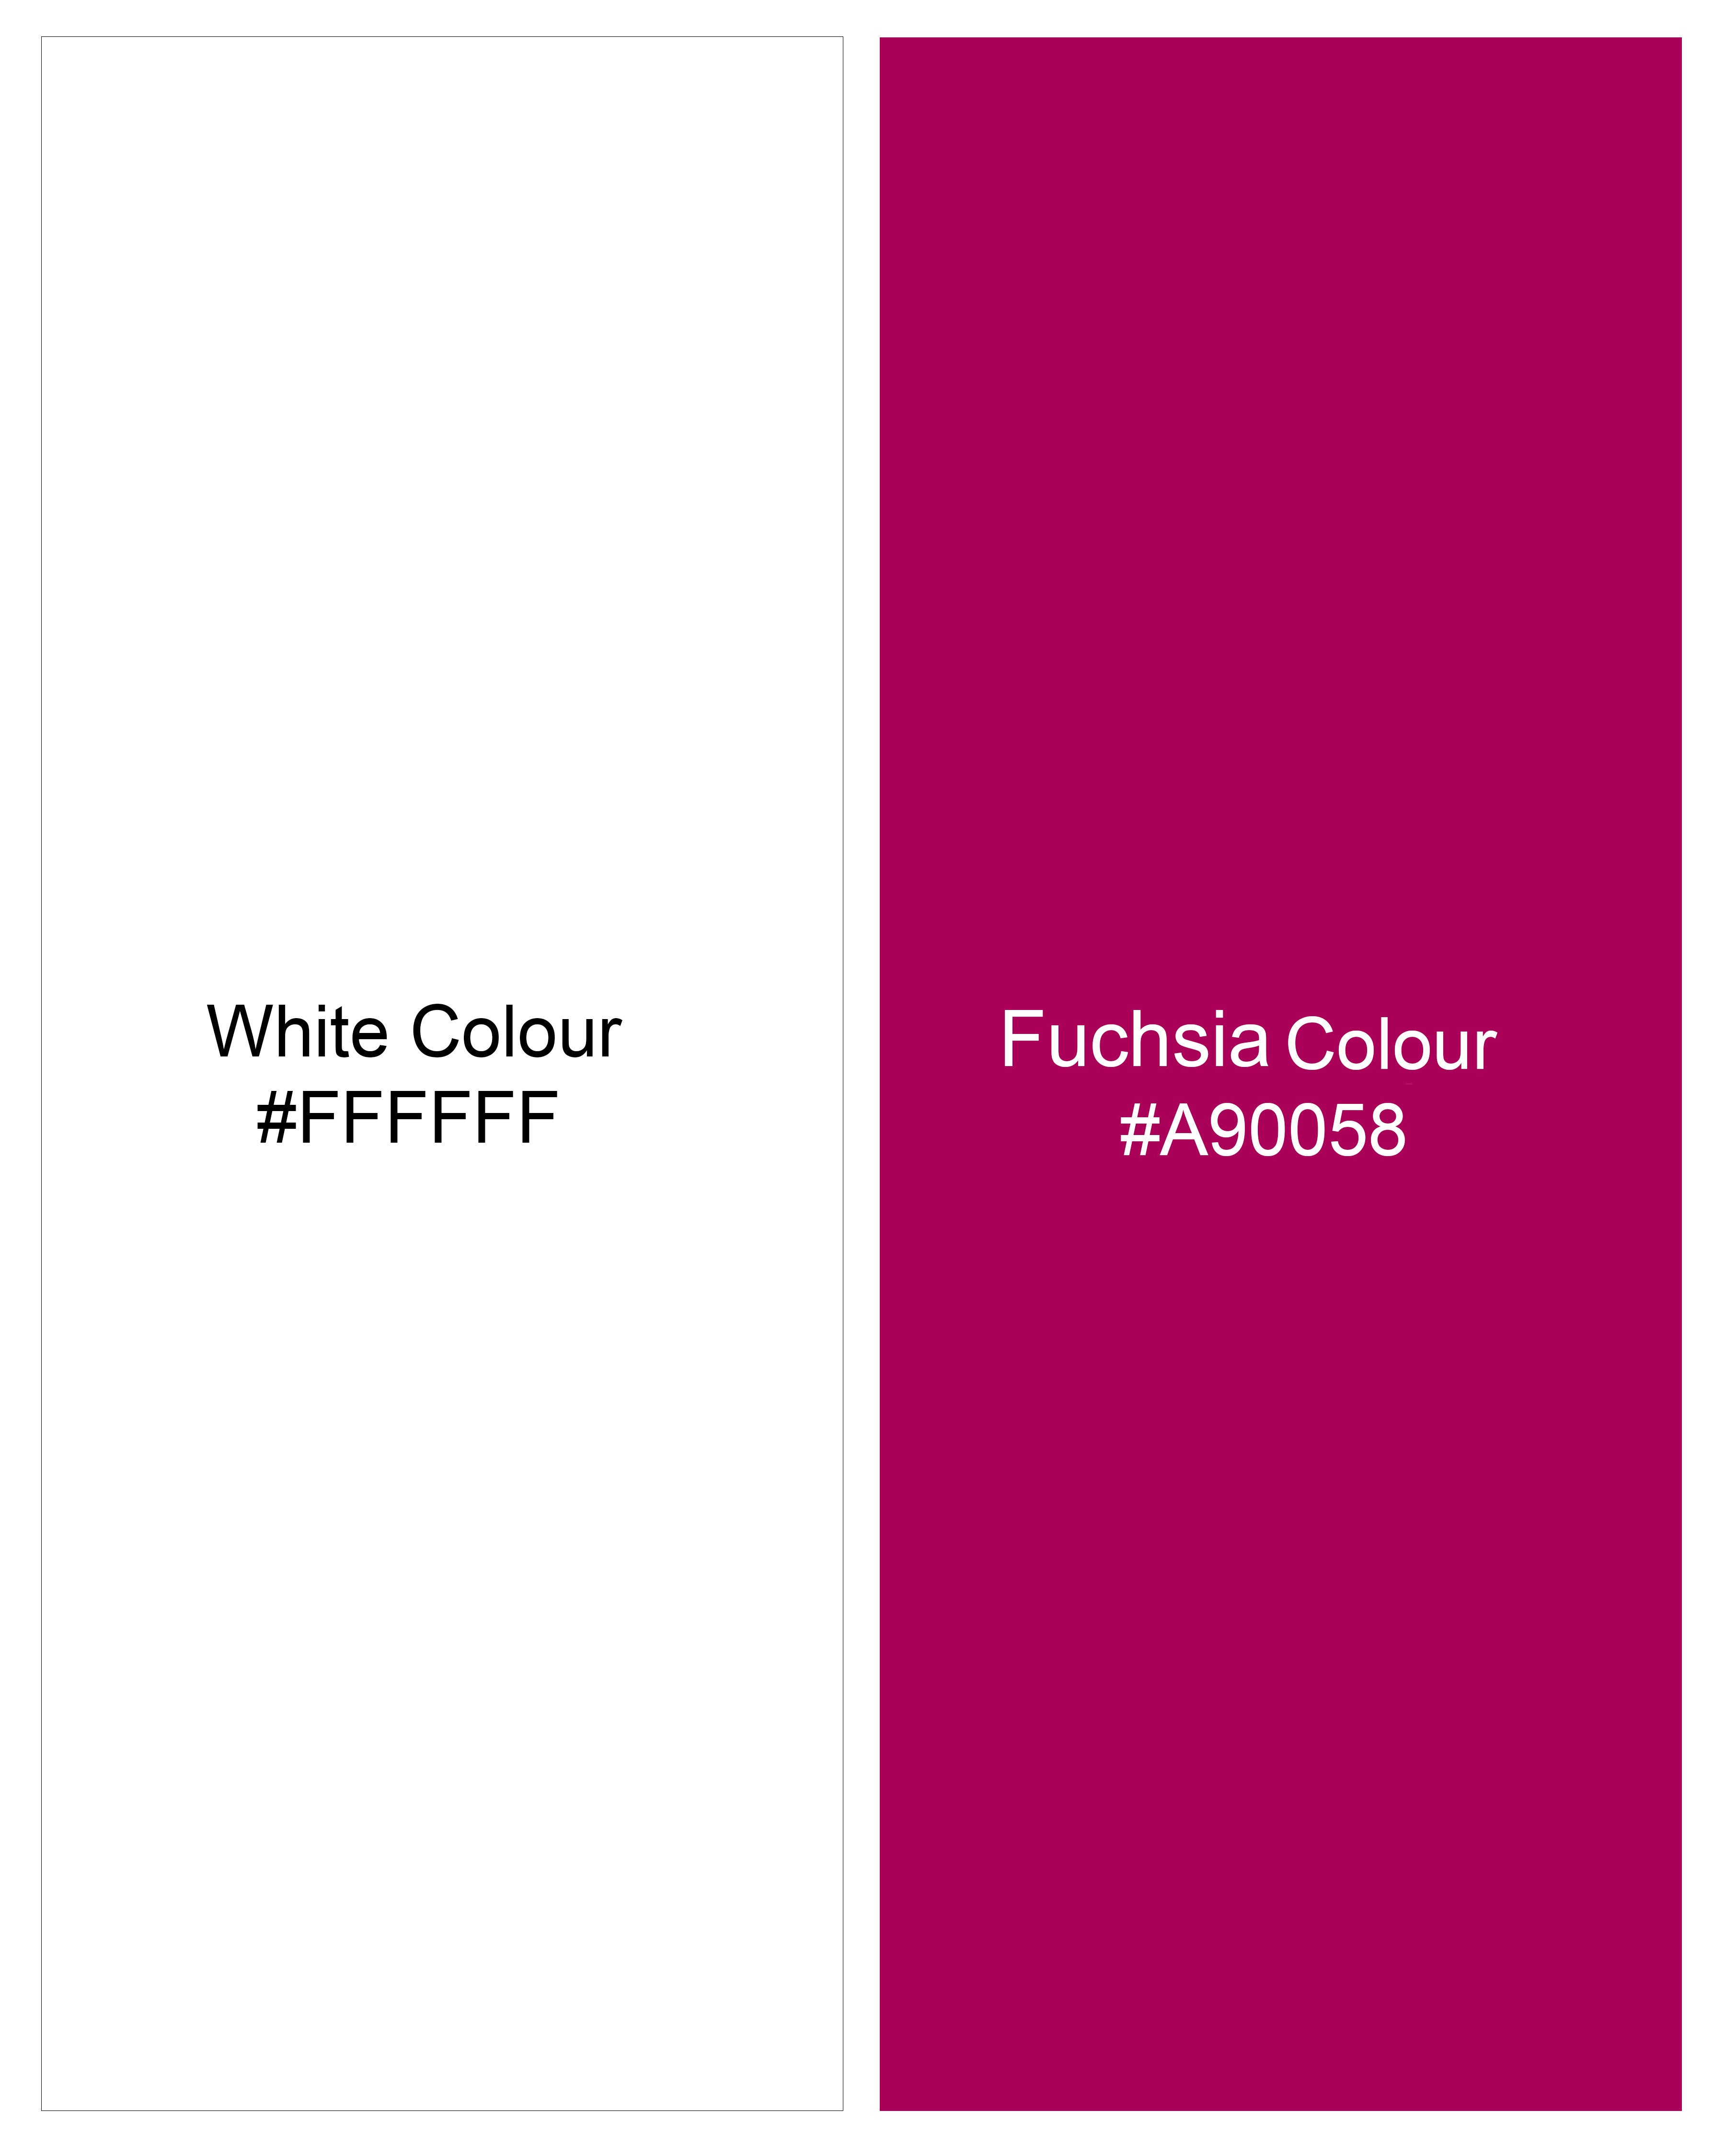 Bright White with Fuchsia Red Premium Cotton Designer Shirt 9288-D19-38,9288-D19-H-38,9288-D19-39,9288-D19-H-39,9288-D19-40,9288-D19-H-40,9288-D19-42,9288-D19-H-42,9288-D19-44,9288-D19-H-44,9288-D19-46,9288-D19-H-46,9288-D19-48,9288-D19-H-48,9288-D19-50,9288-D19-H-50,9288-D19-52,9288-D19-H-52